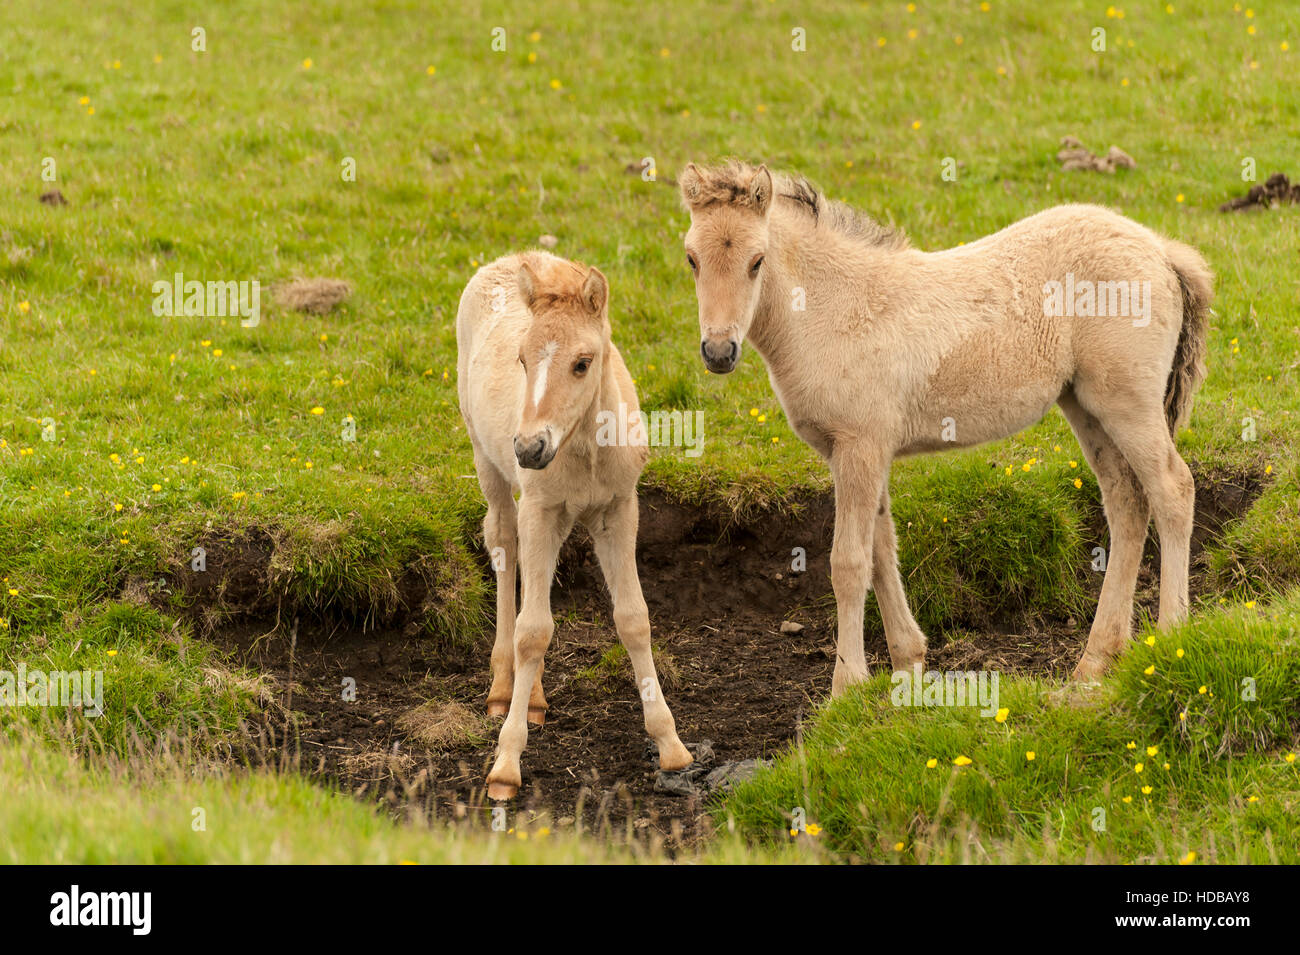 Zwei junge isländische Pferde (Equus Ferus Caballus) - Fohlen und Stute - auf einer Wiese im Süden Islands. Stockfoto